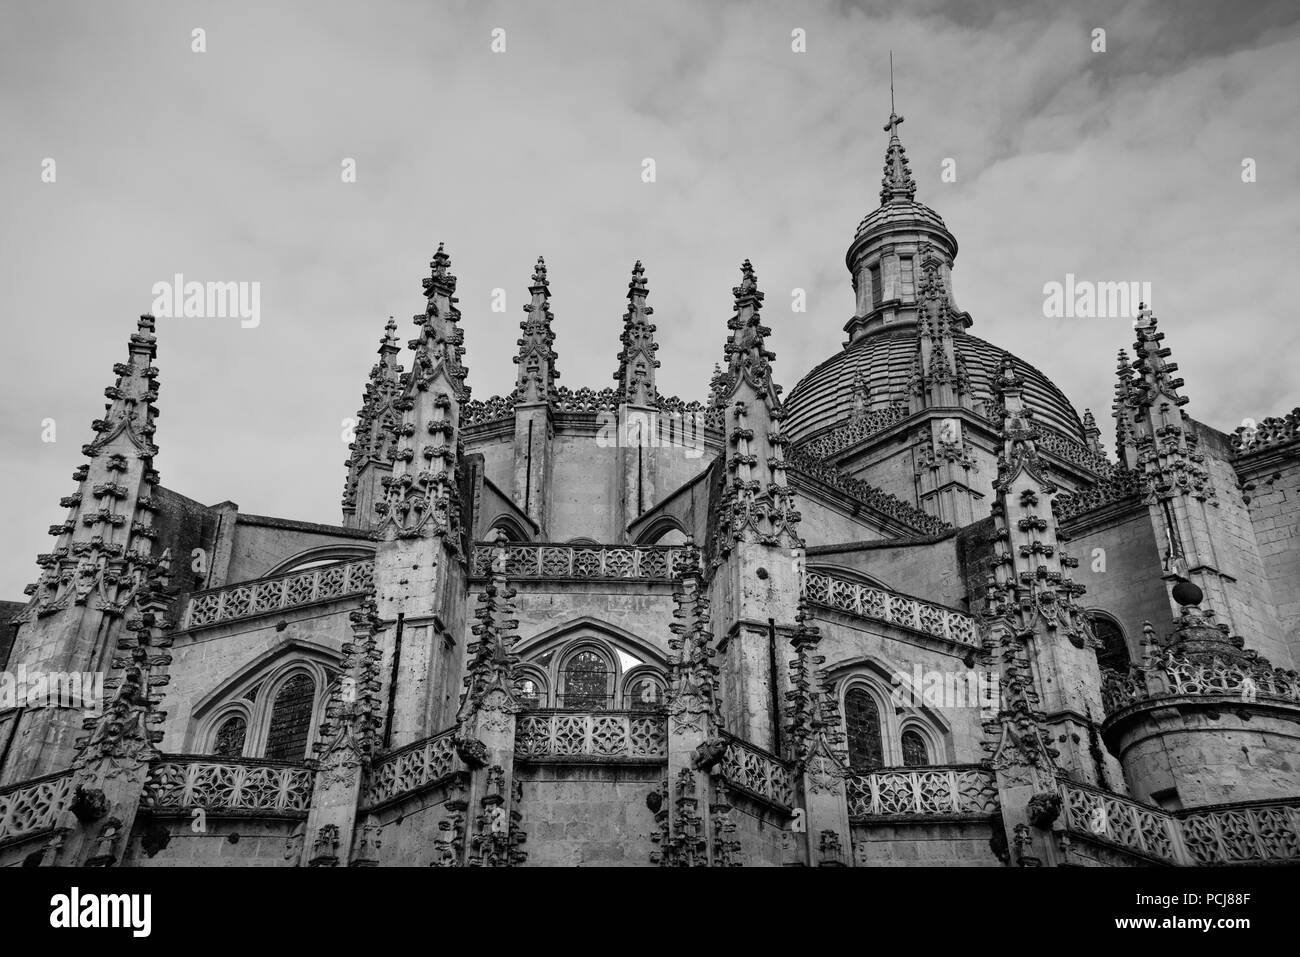 La cattedrale medievale della città di Segovia, Spagna. La cattedrale fu costruita nel XVI secolo ed è una delle attrazioni turistiche della regione. Foto Stock